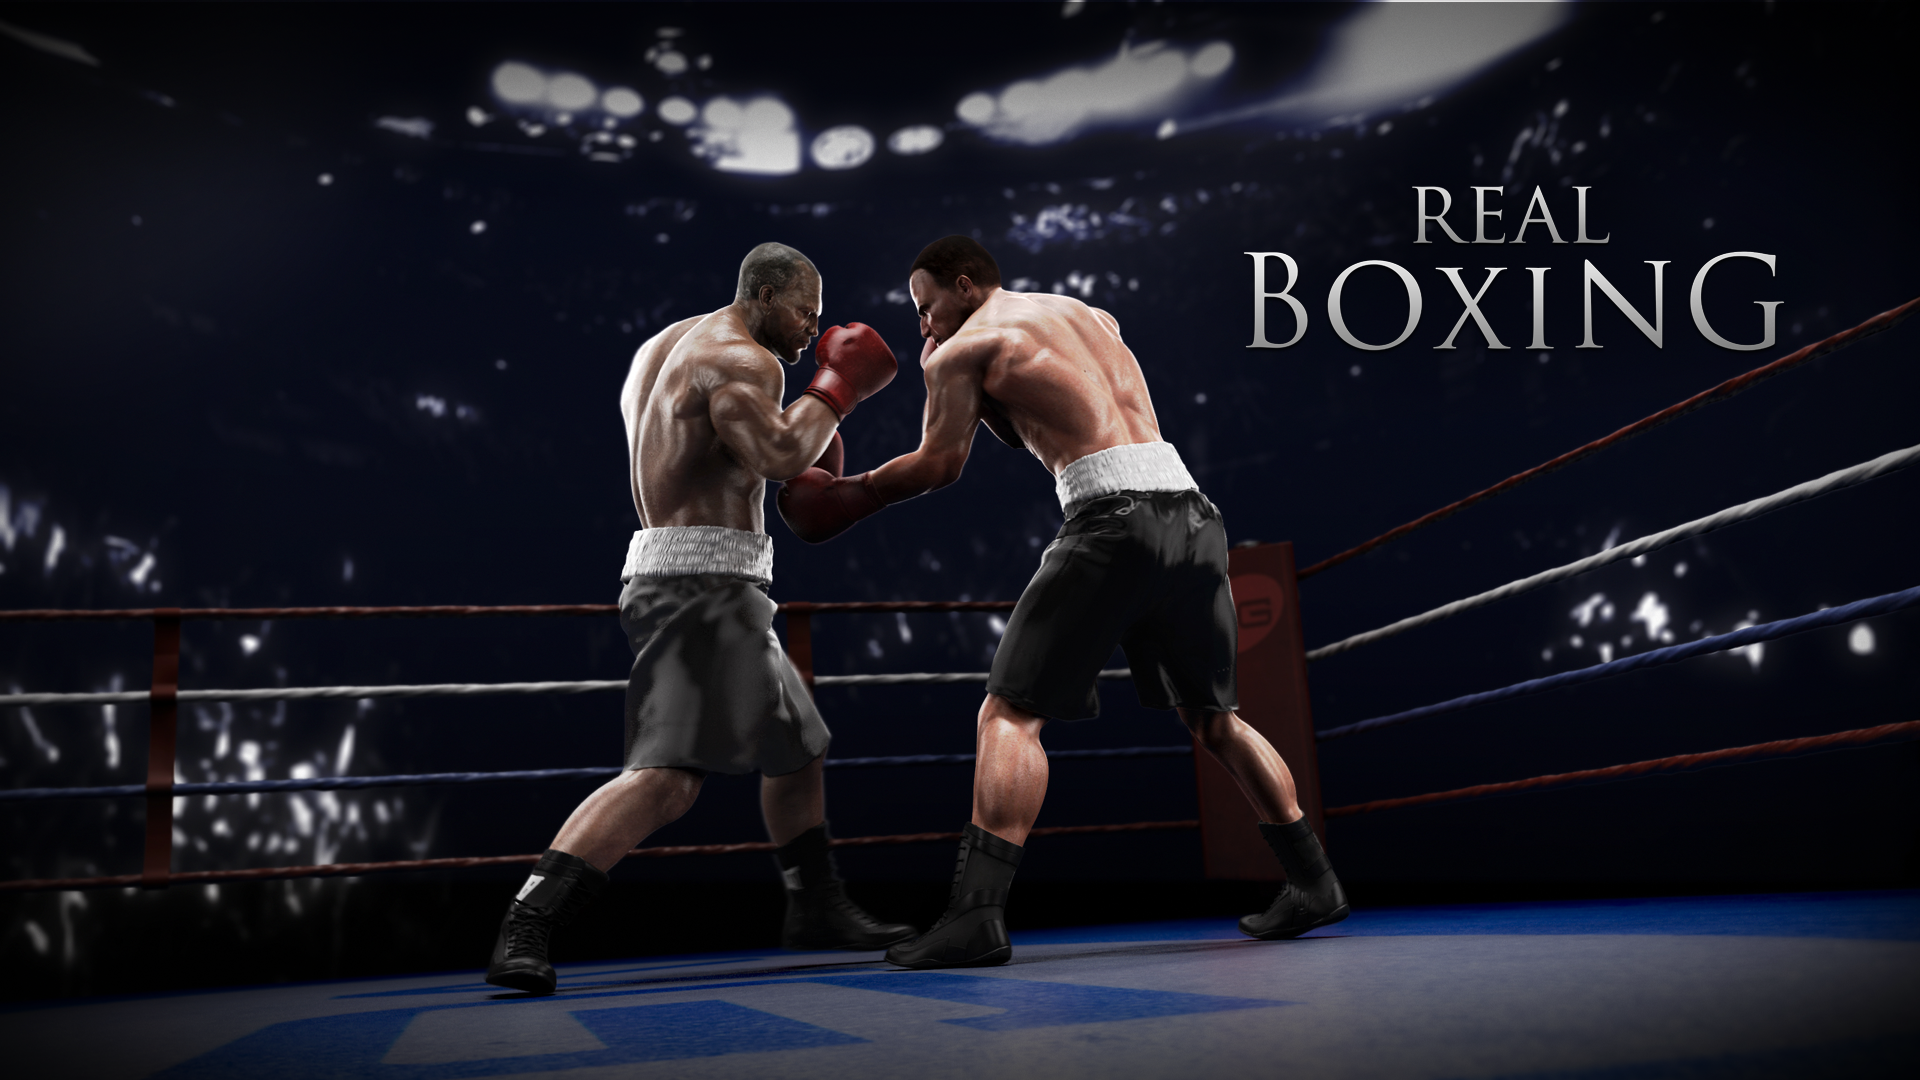 Siz Değerli Oyun Sever Ziyaretçilerimizi Düşünerek Oyunda Para Biriktirme Sorununu Ortadan Kaldırmak Amaçlı Sizlere Real Boxing Oyununun Para Hilesini Hdpng.com  - Boxing, Transparent background PNG HD thumbnail